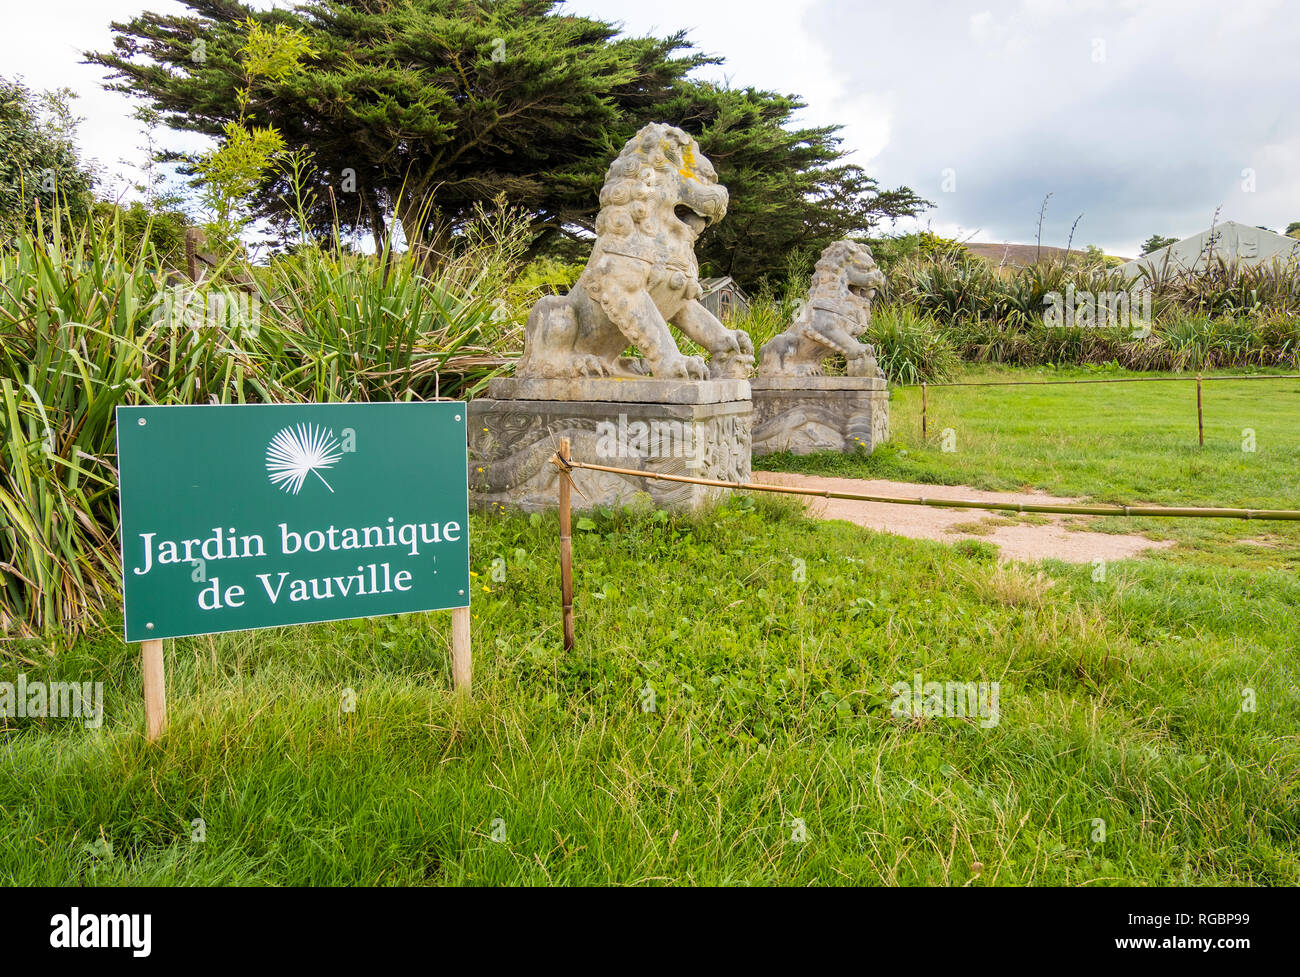 Jardin botanique de Vauville, est un jardin botanique privé situé sur le terrain du Château de Vauville près de Beaumont-Hague. Normandie, France Banque D'Images